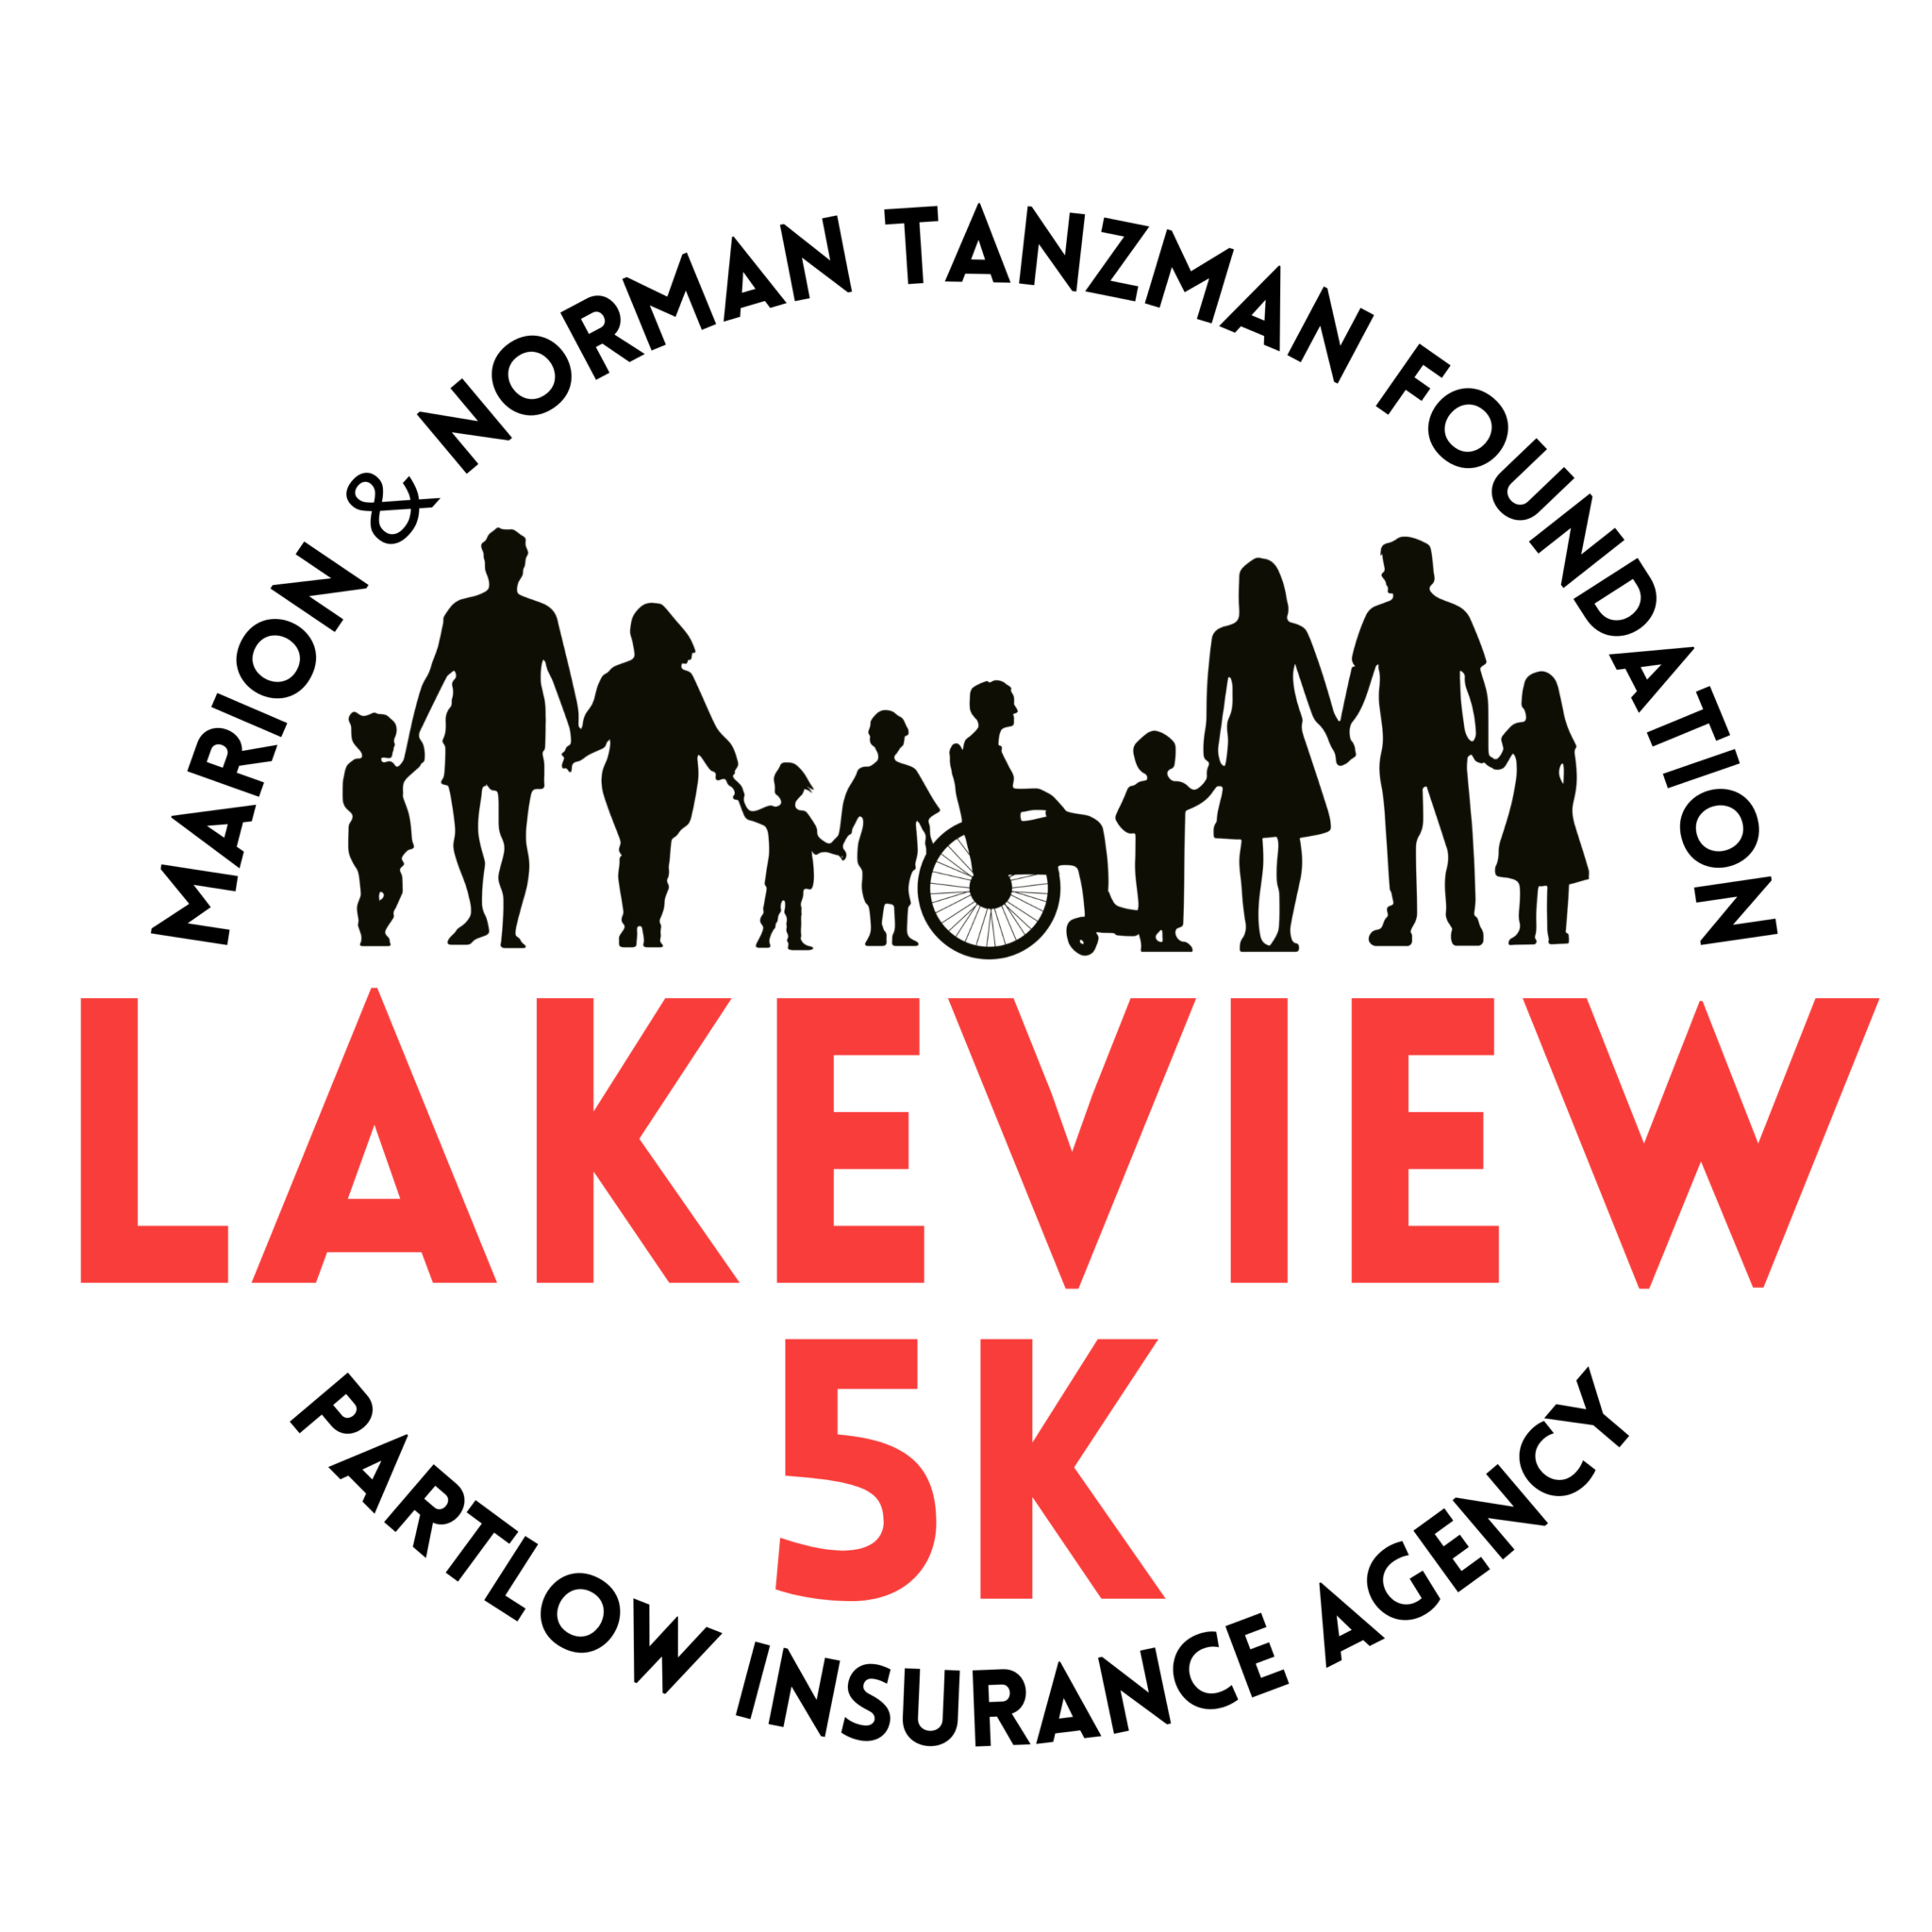 Lakeview 5K logo on RaceRaves